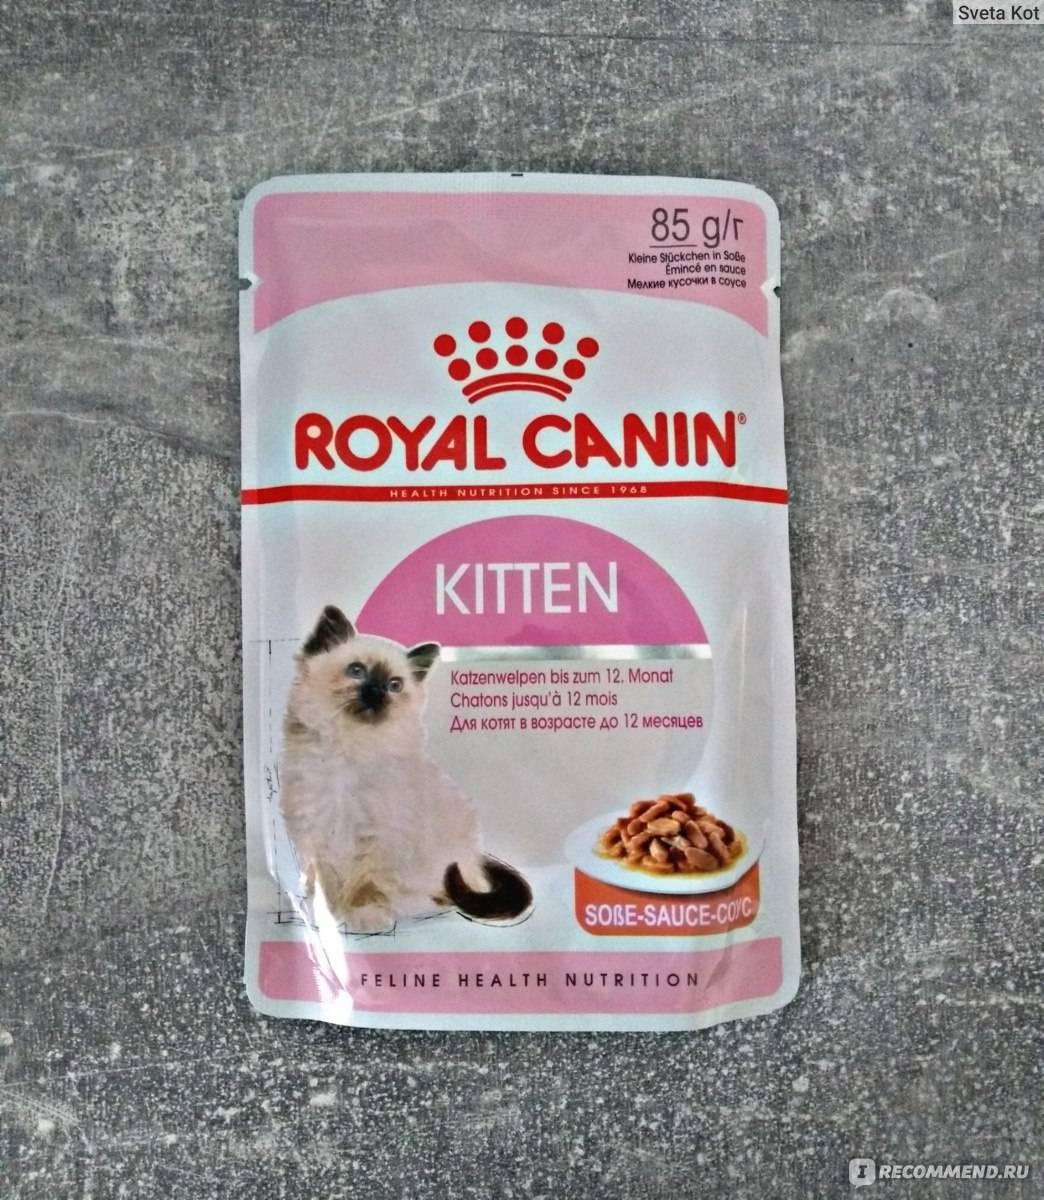 Royal canin корм для кошек: отзывы, где купить, состав